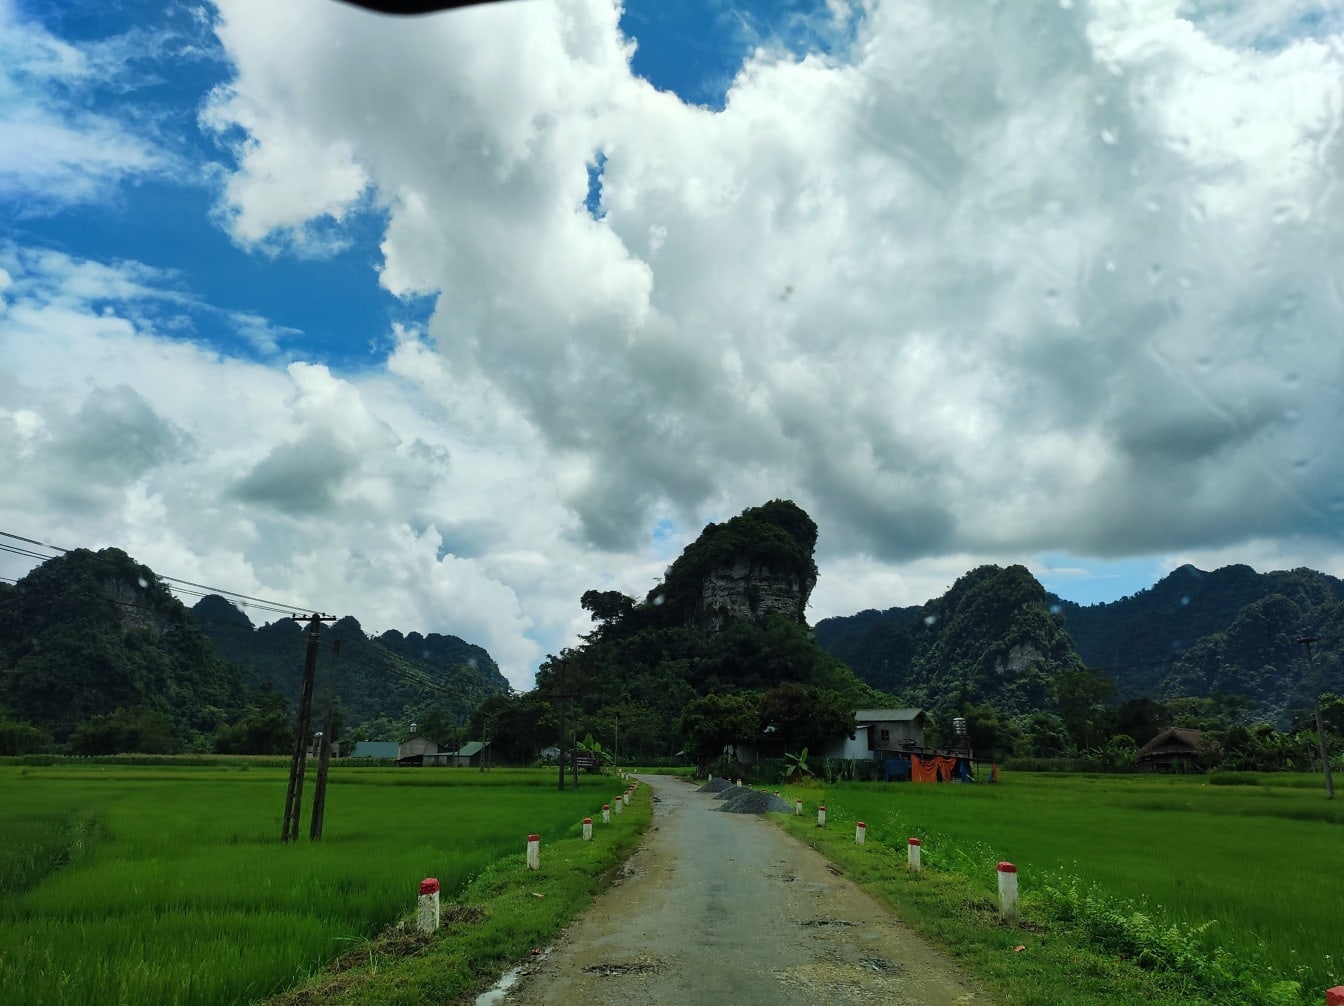 Asphalt road in rural countryside in Vietnam